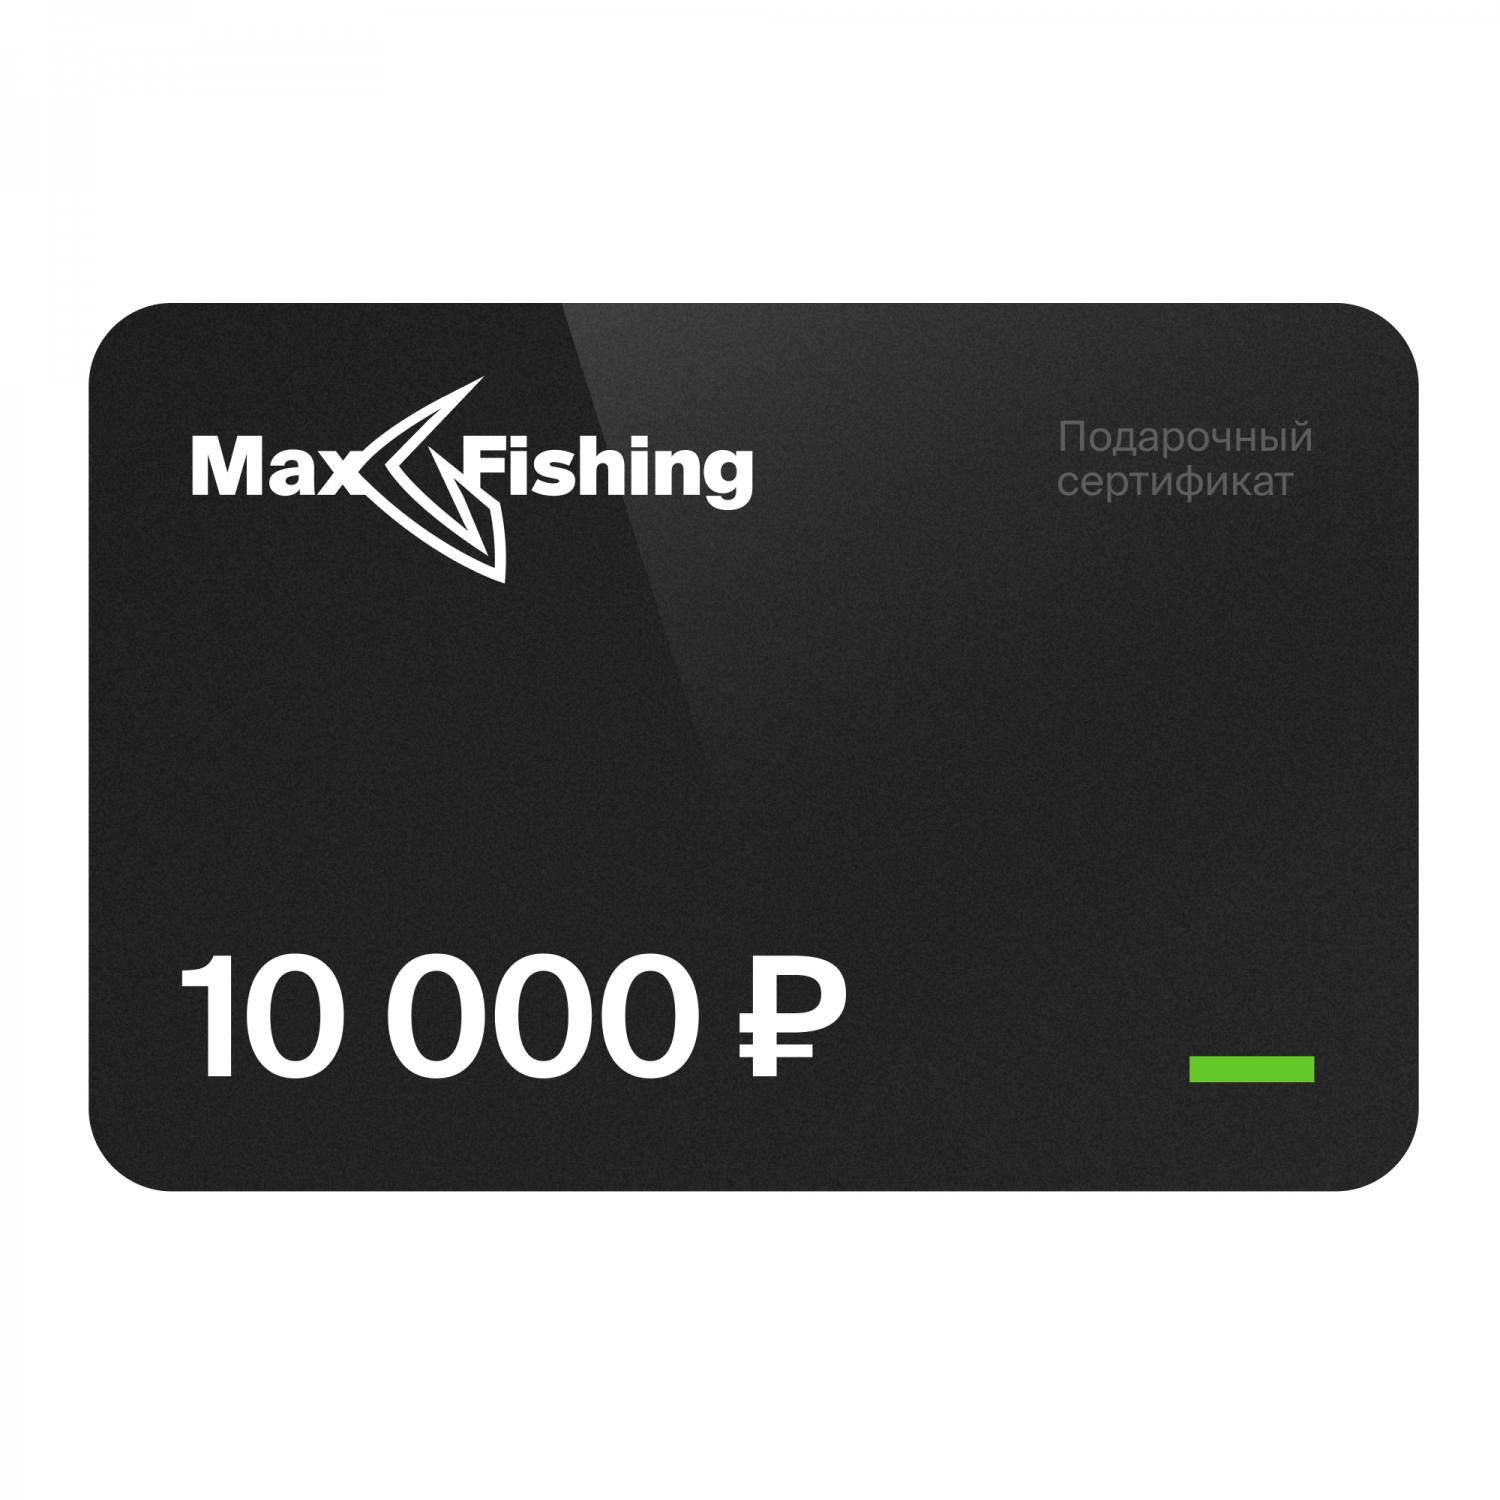 Подарочный сертификат MaxFishing 10 000 ₽ виртуальный подарочный сертификат 3 000